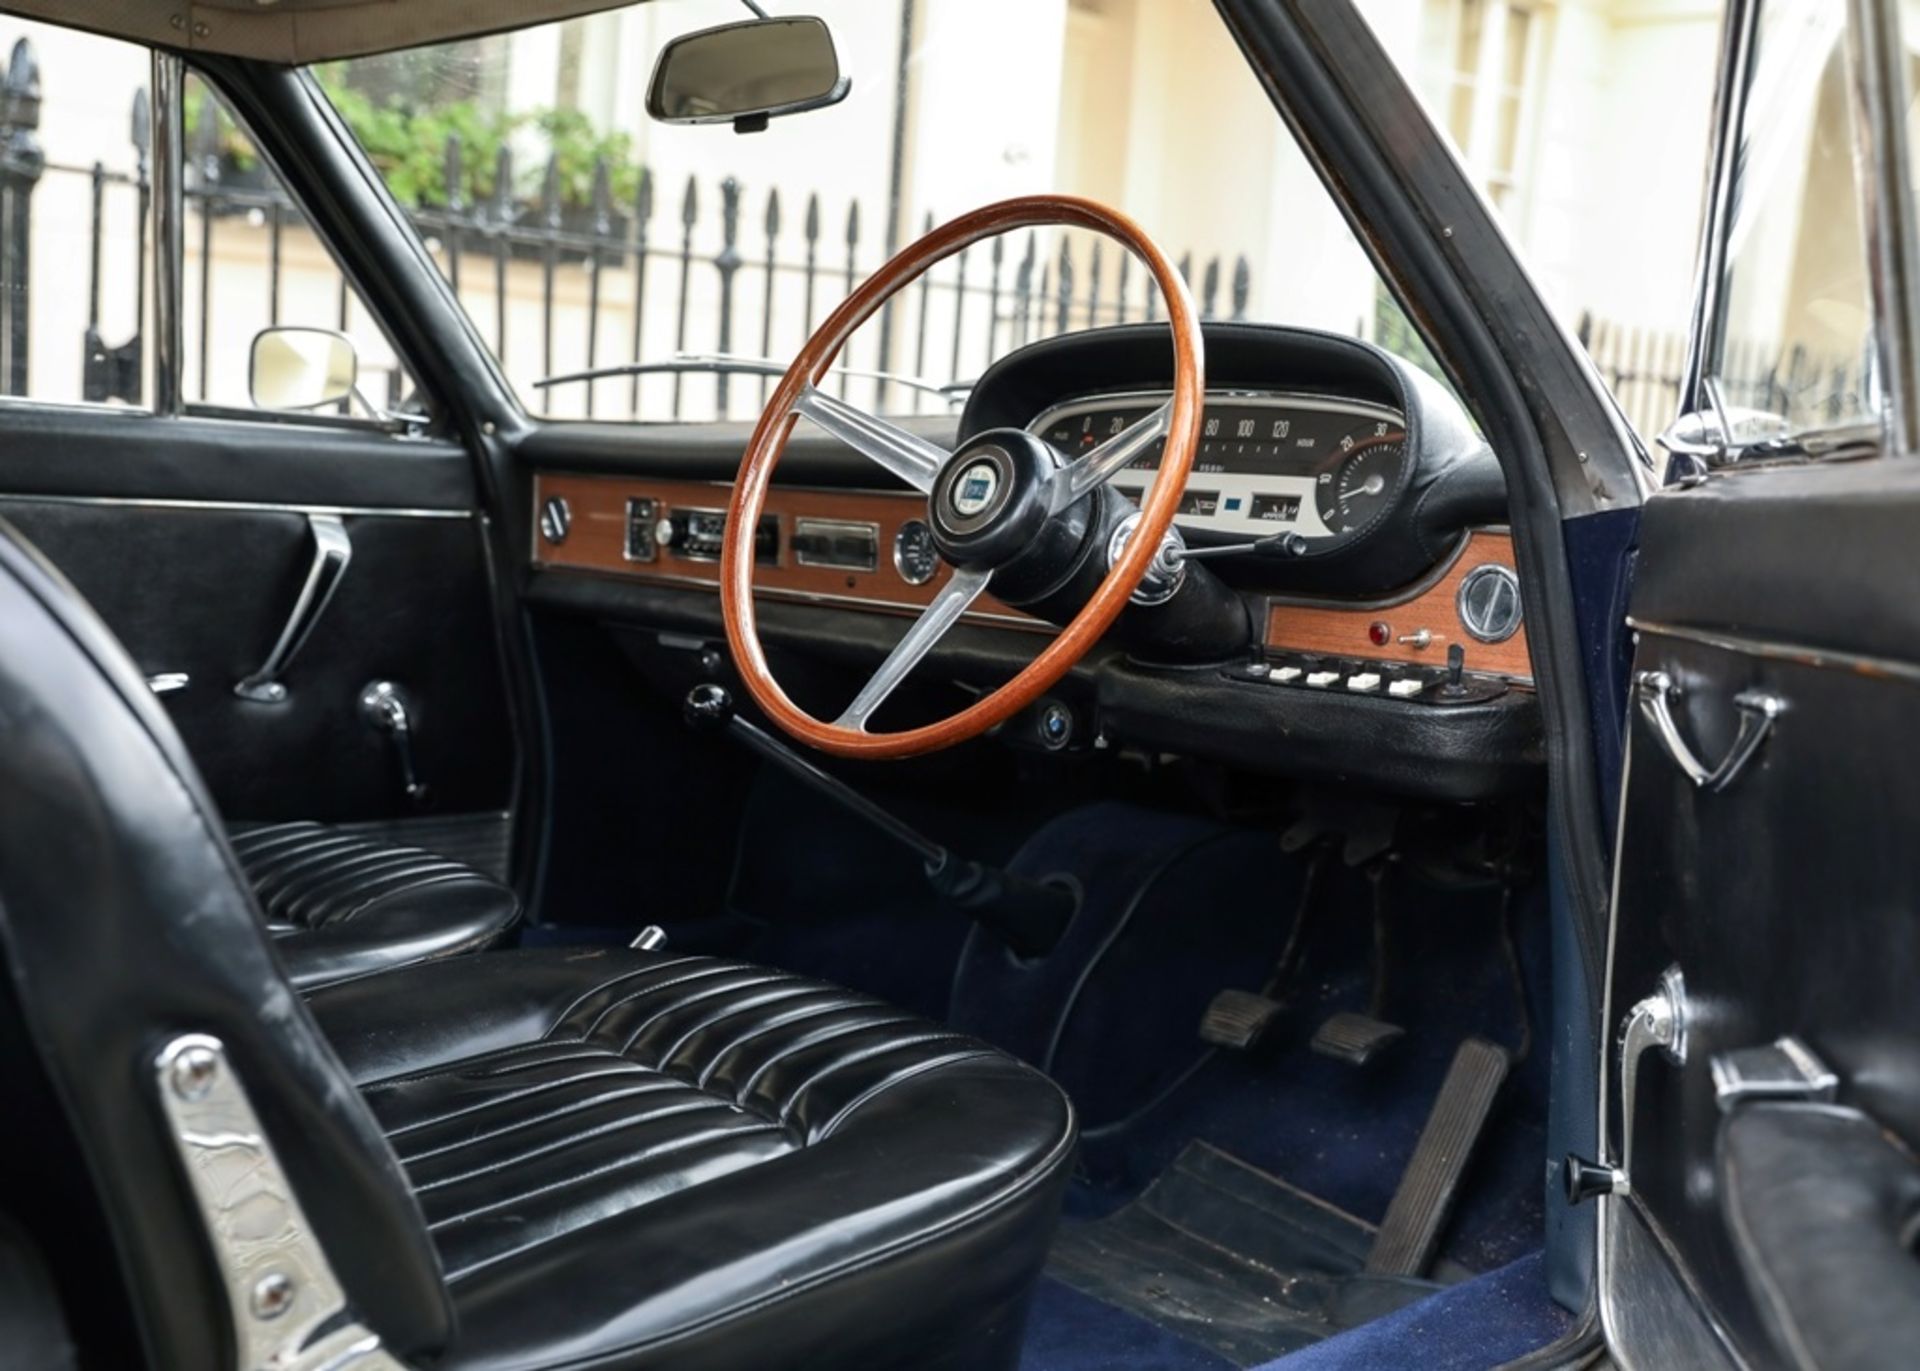 1964 Lancia Flavia - Image 9 of 10